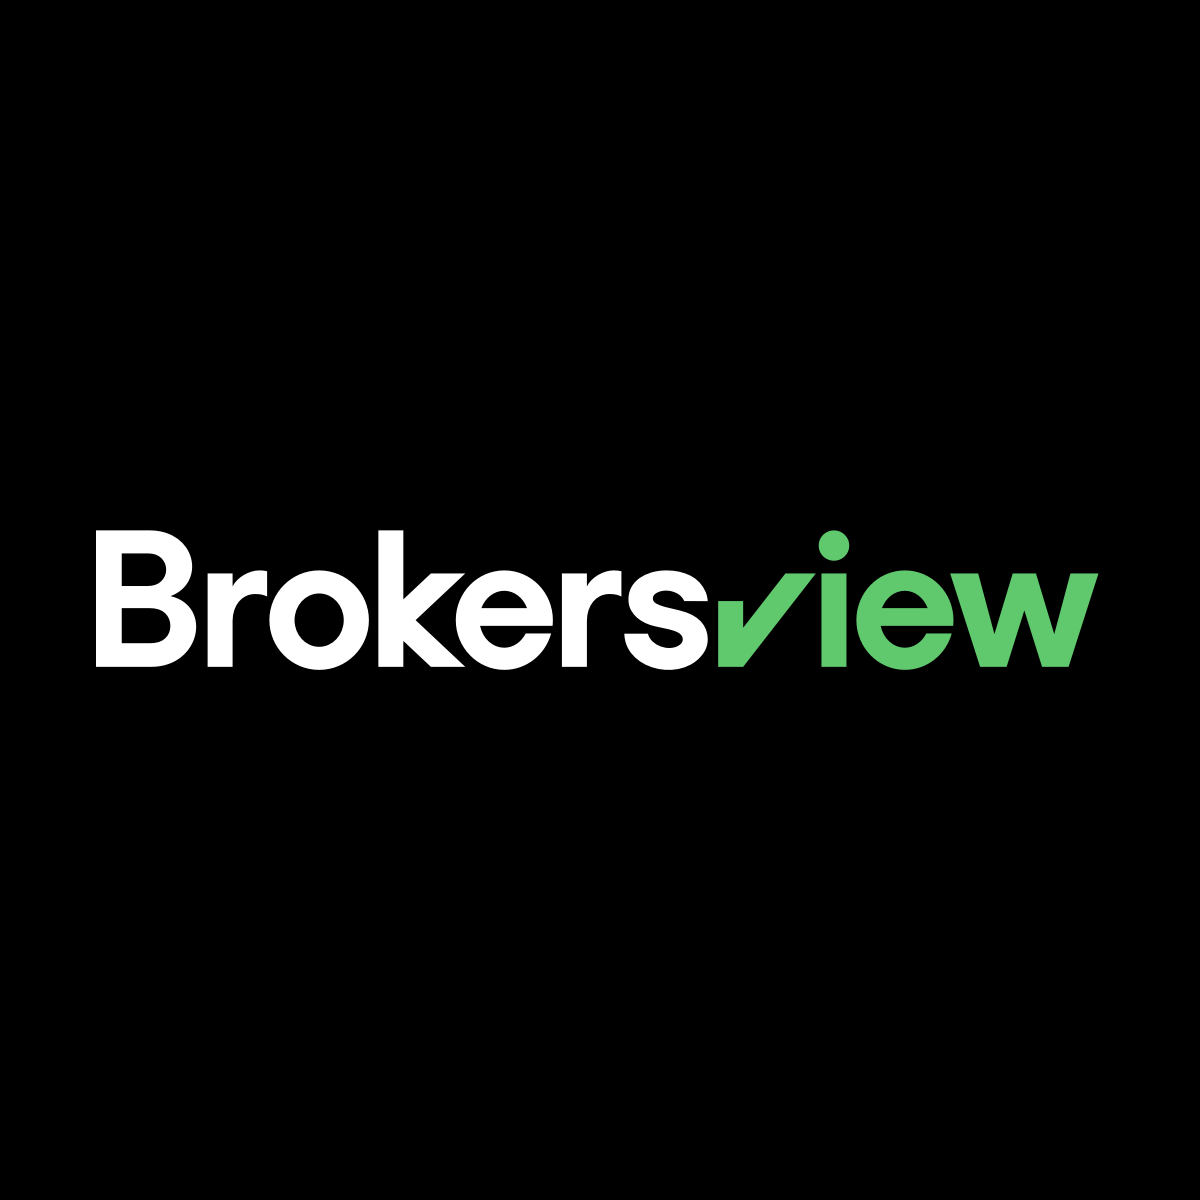 www.brokersview.com